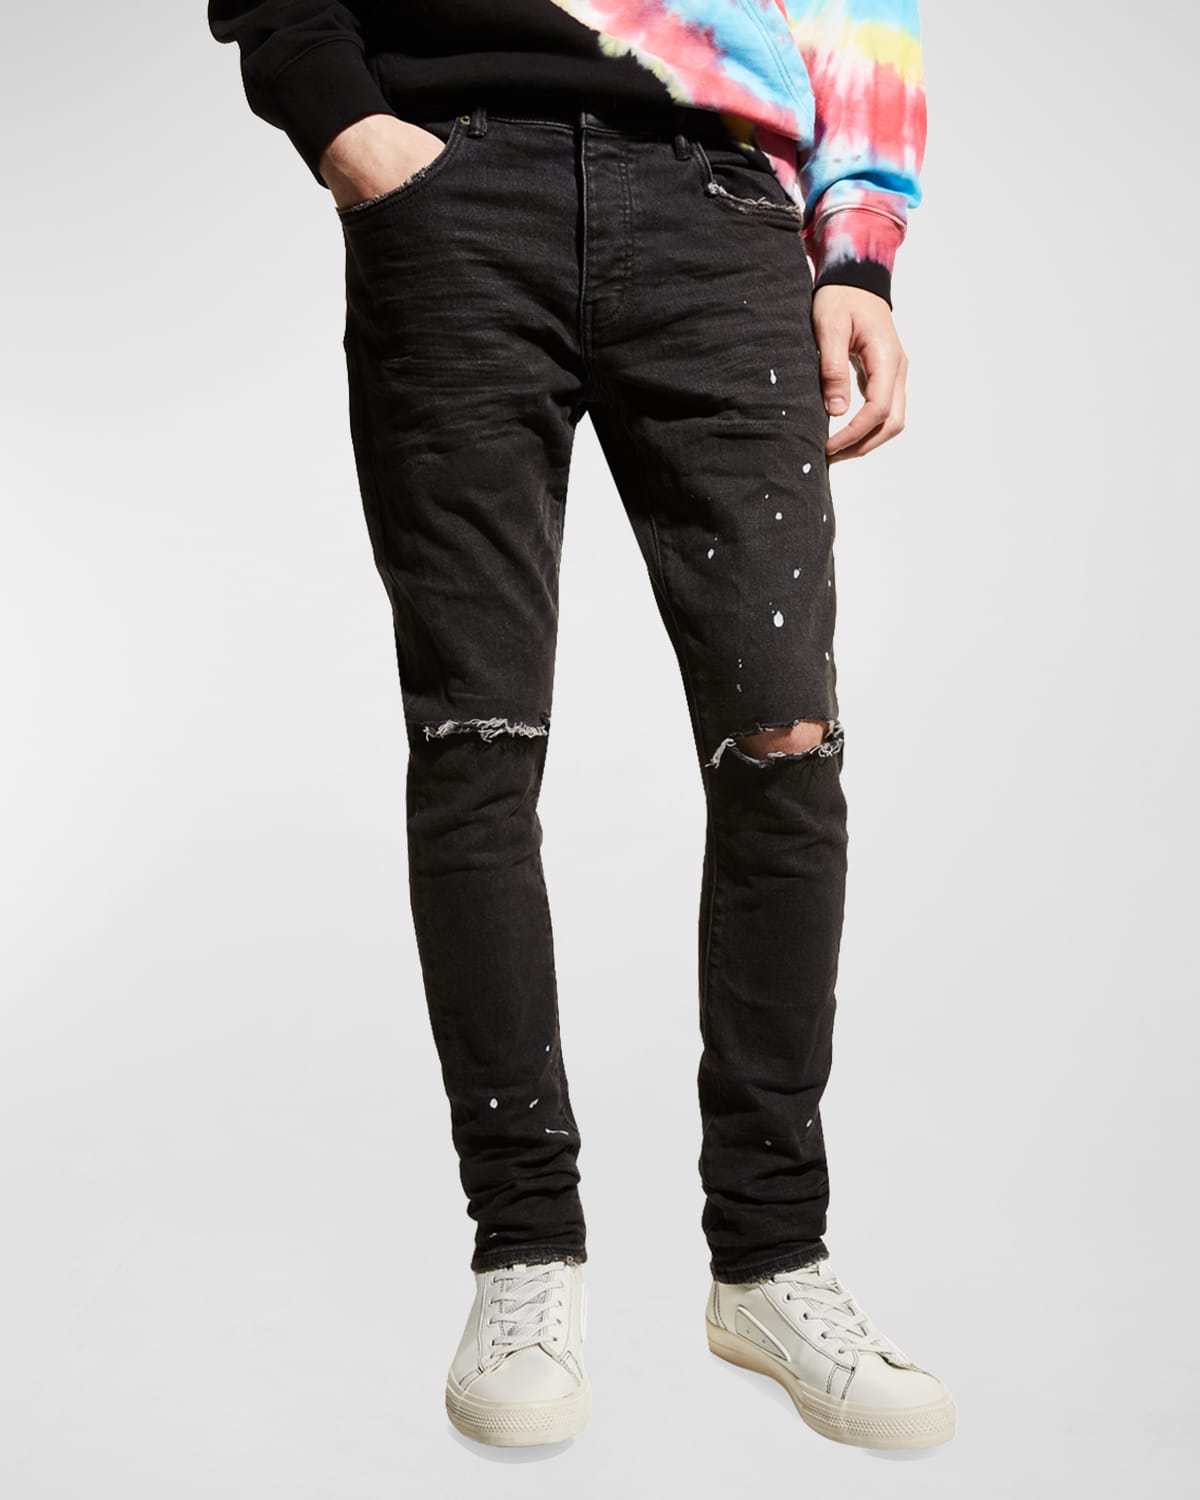 Gepensioneerde Beheren Lijkt op Black Ripped Jeans | Neiman Marcus